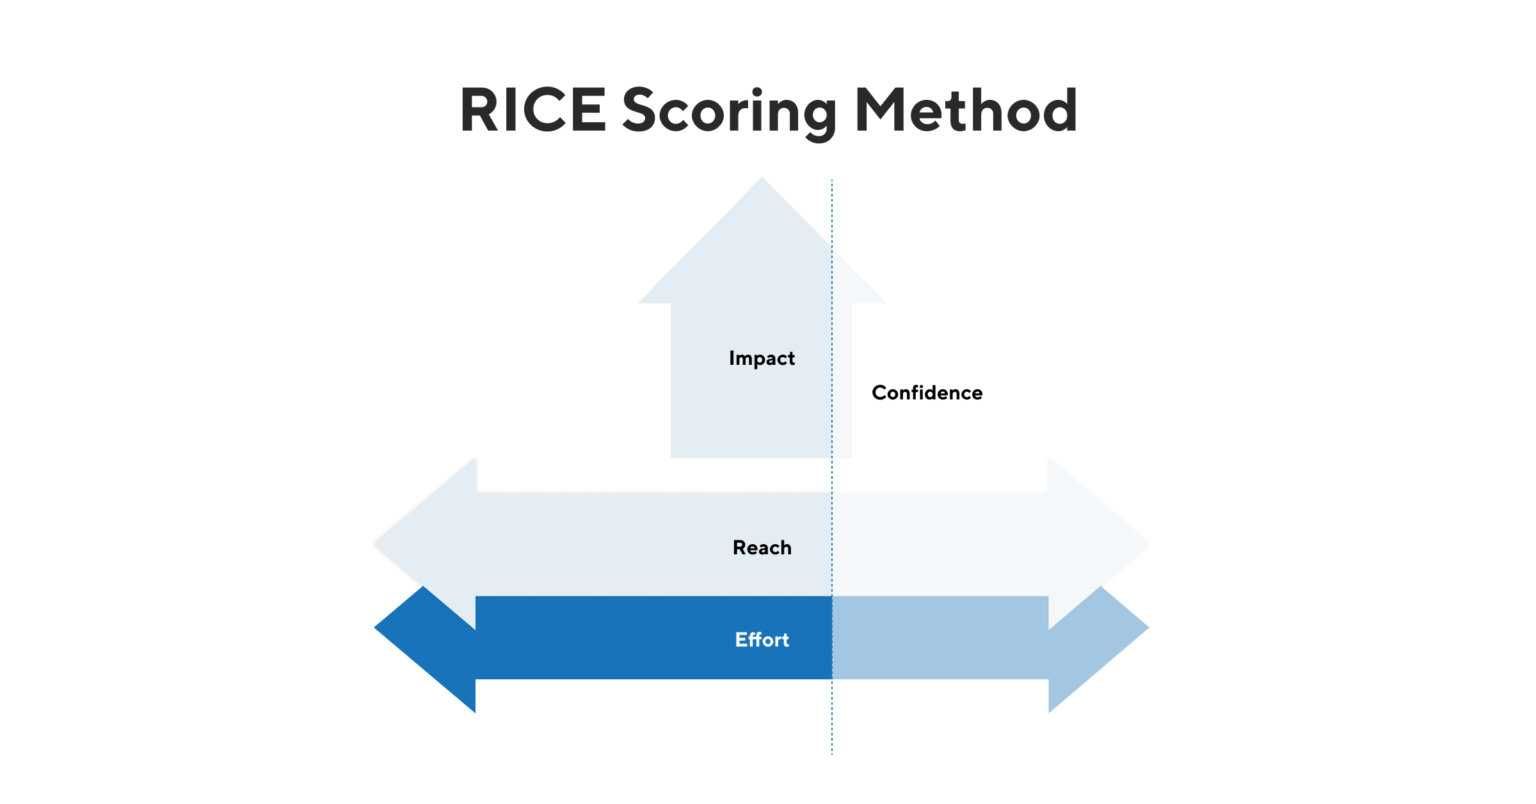 RICE Scoring Model